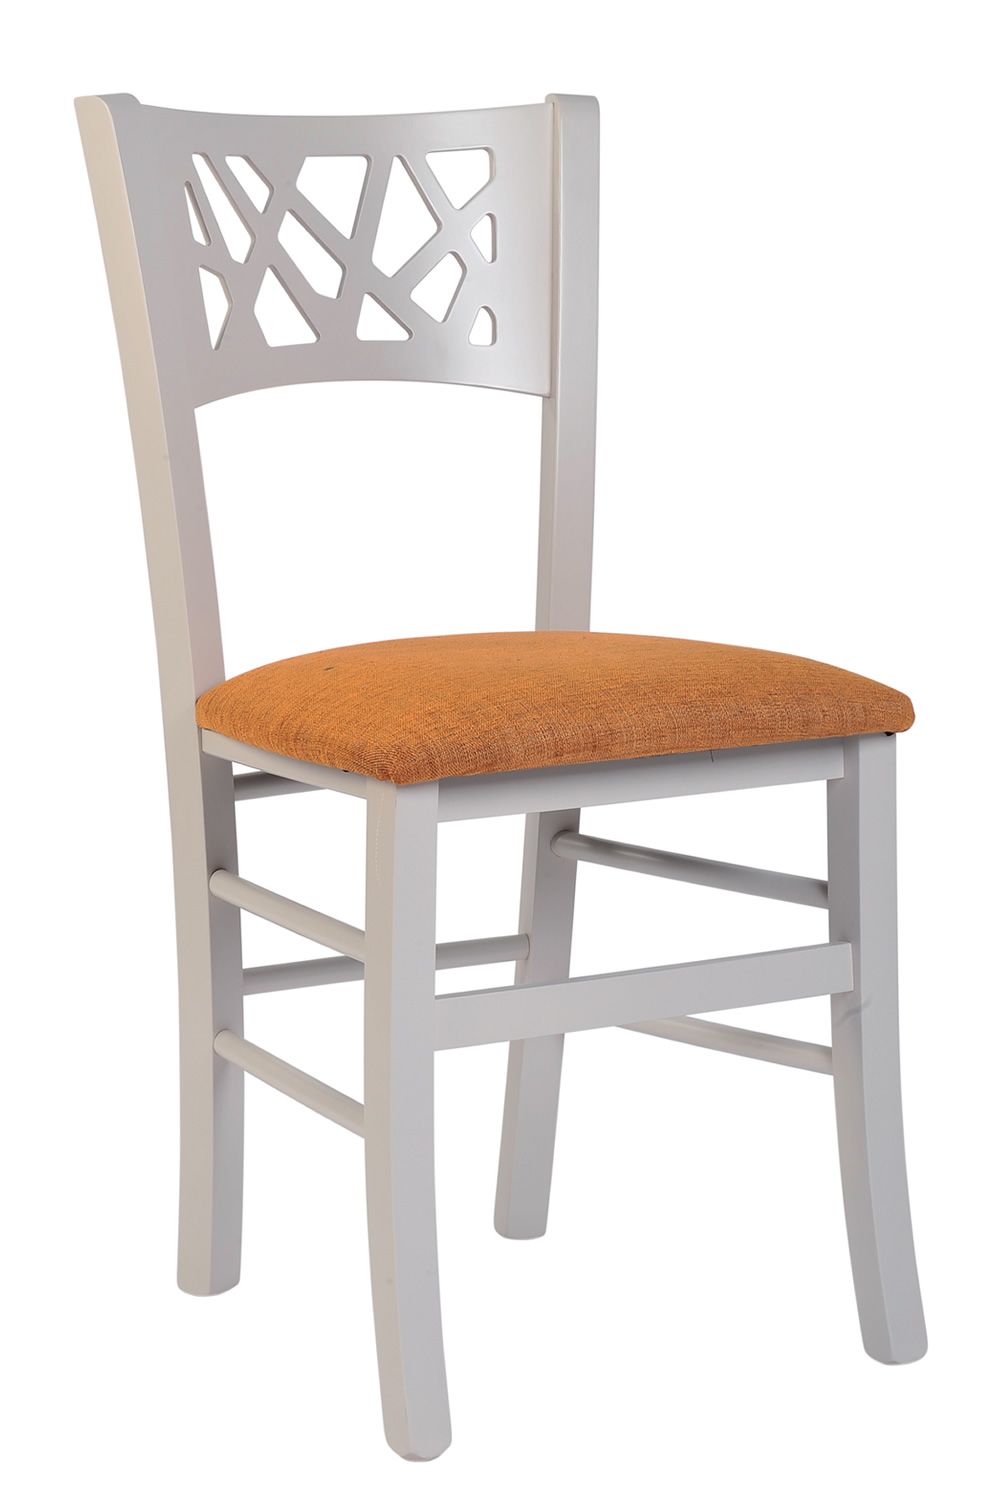 MU170 pour Bars et Restaurants  Chaise moderne en bois pour bars et